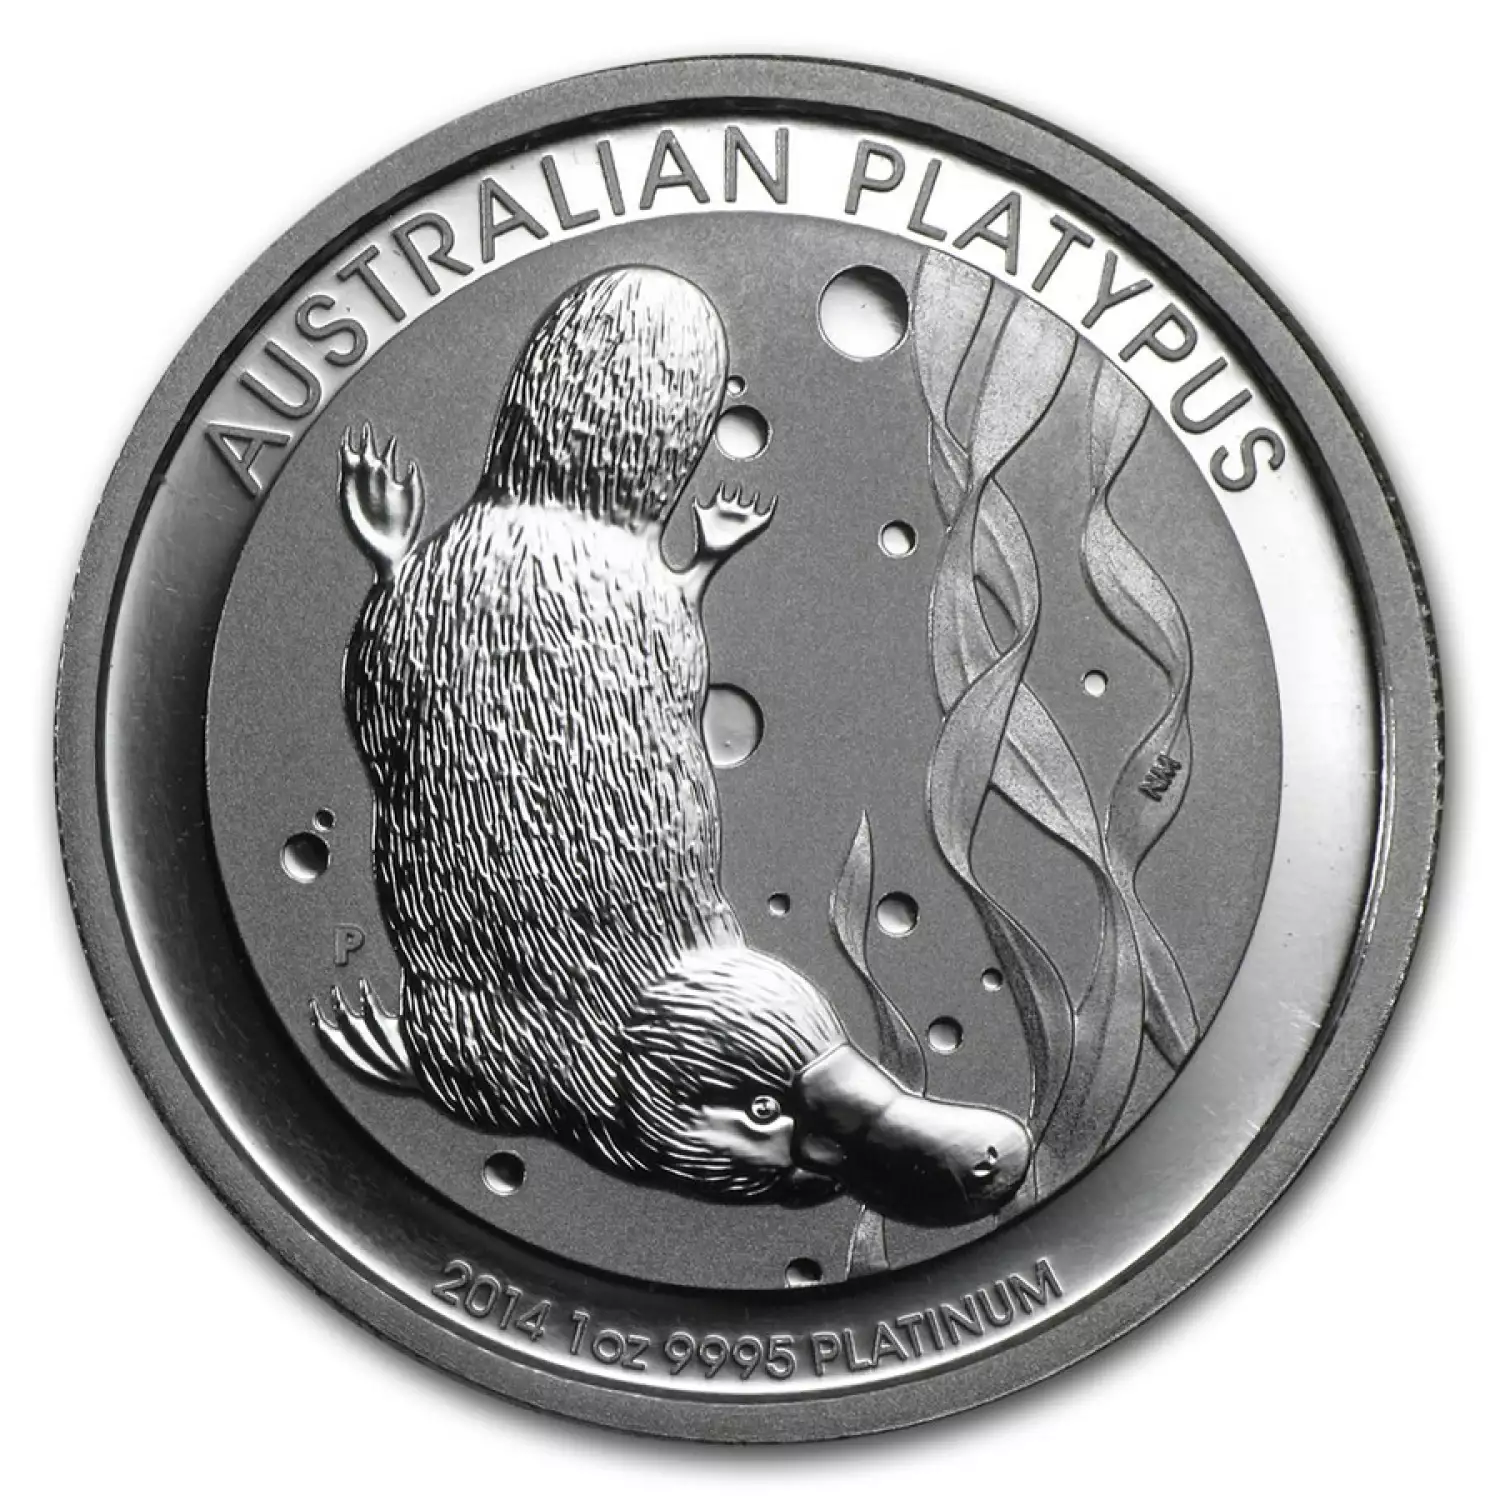 2014 1oz Australian Perth Mint Platinum Platypus (2)